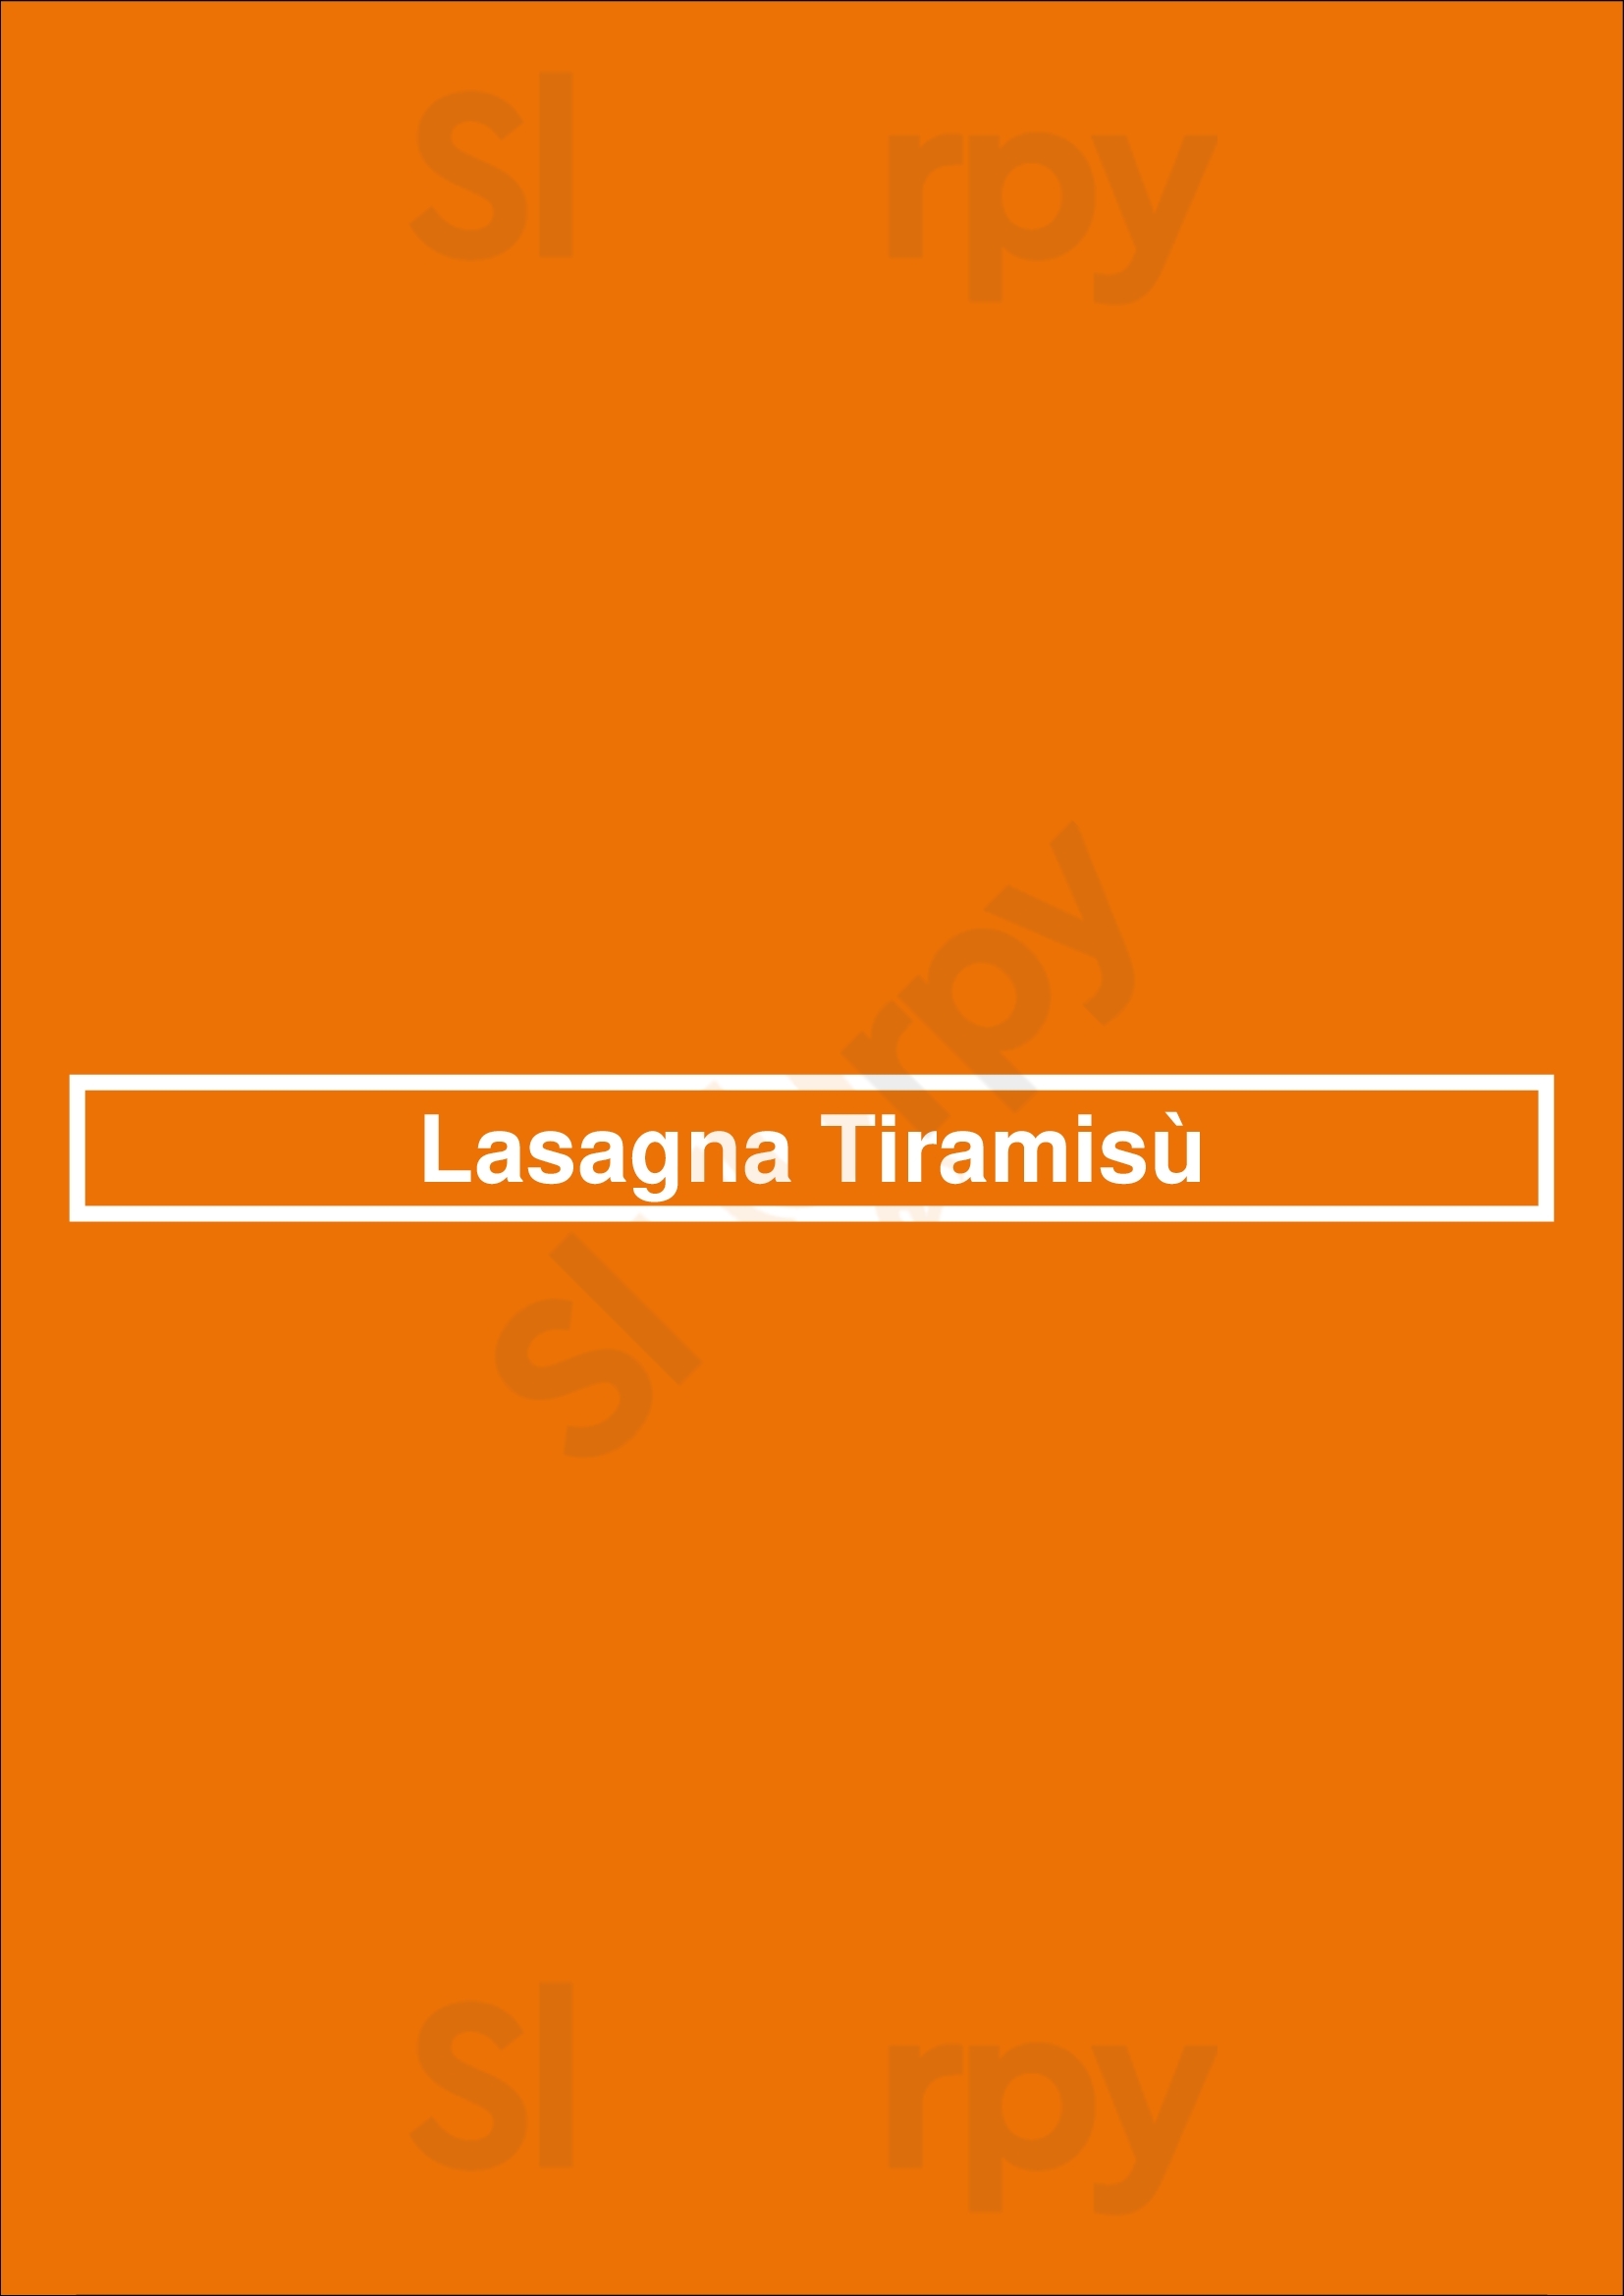 Lasagna Tiramisù Bruxelles Menu - 1